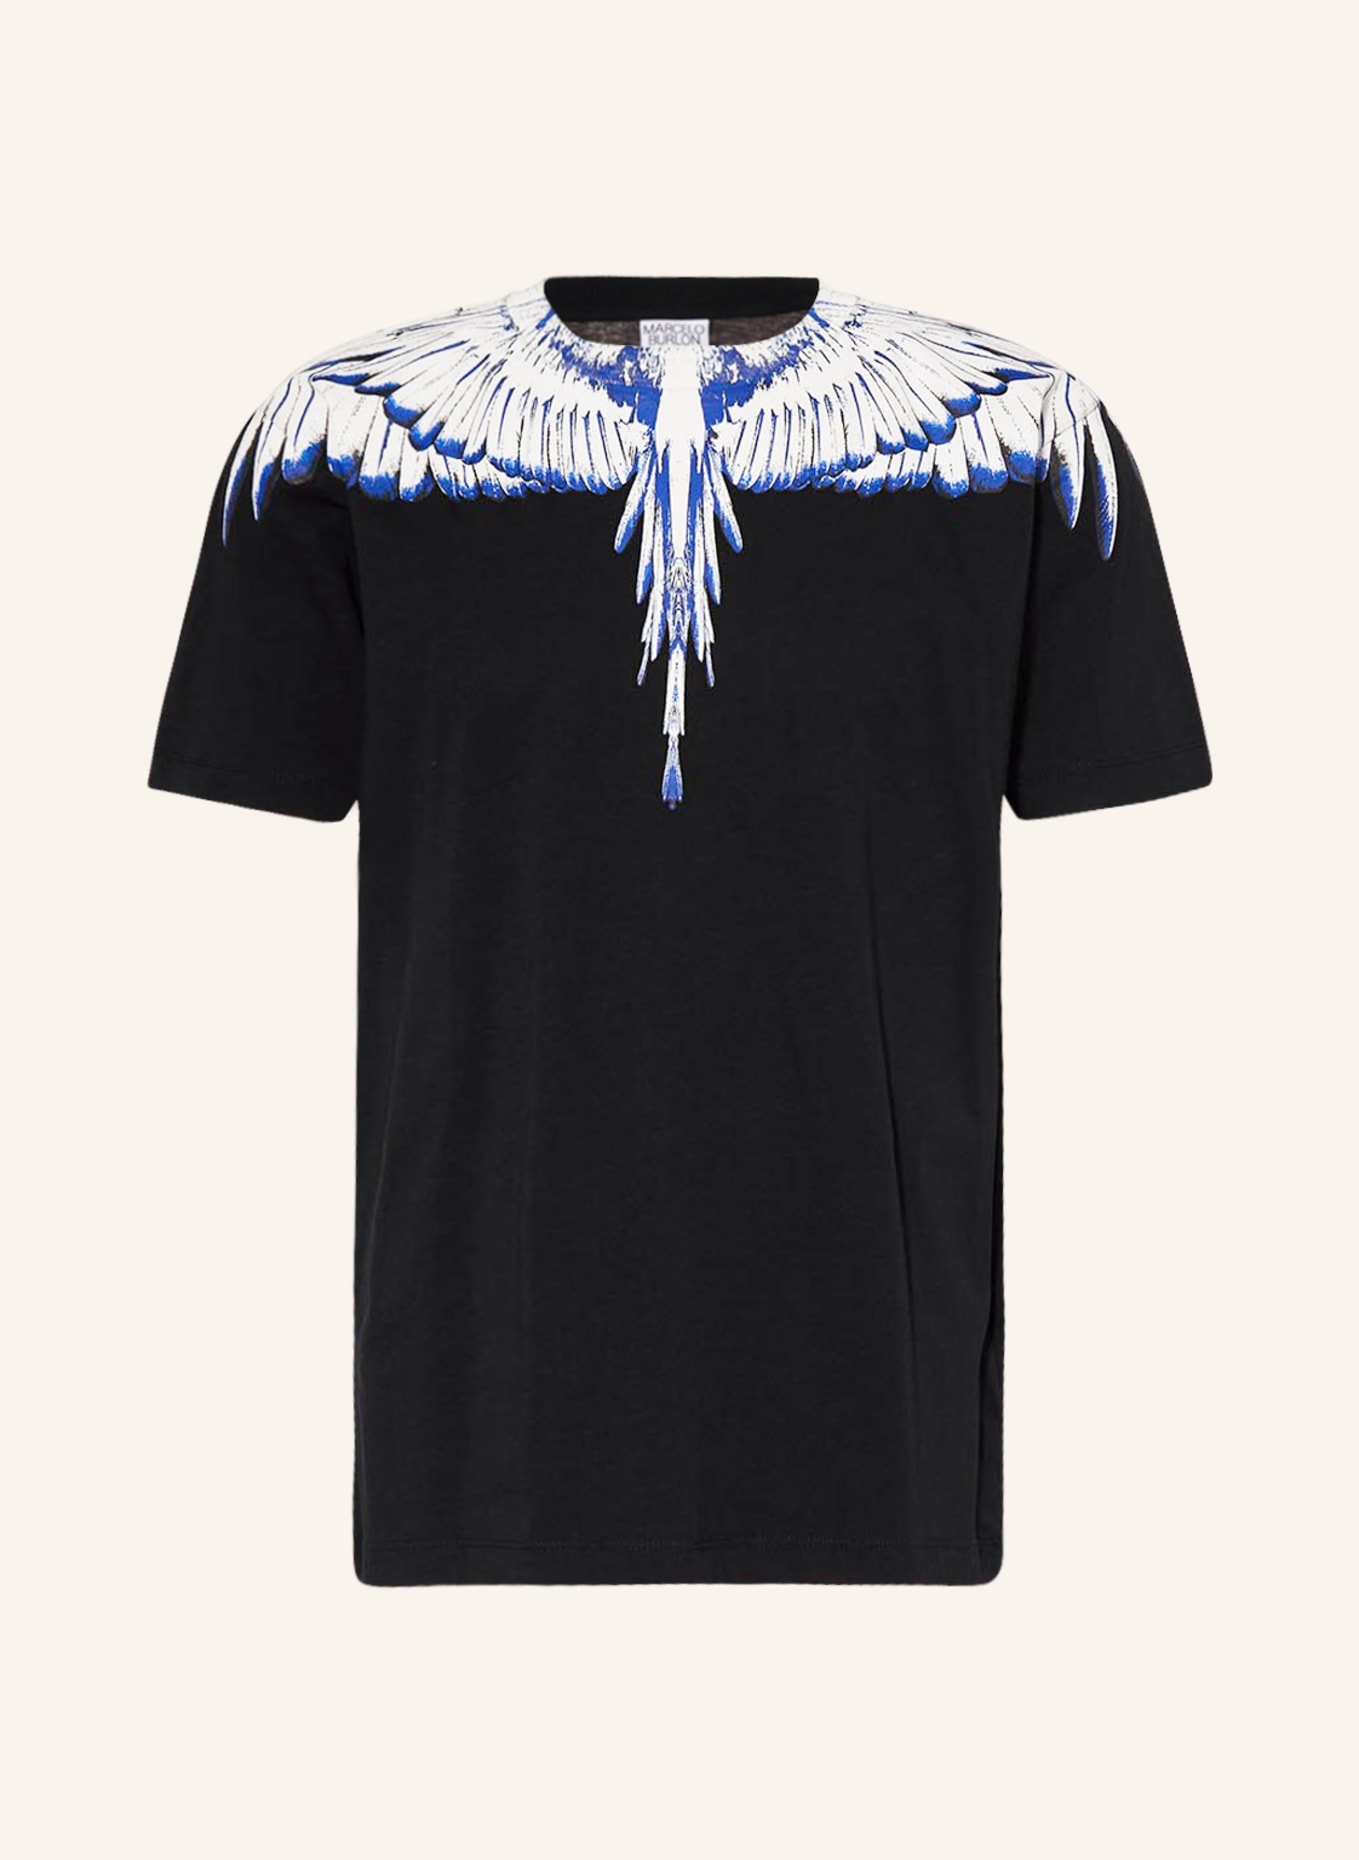 MARCELO BURLON T-shirt ICON WINGS, Kolor: CZARNY/ BIAŁY/ NIEBIESKI (Obrazek 1)